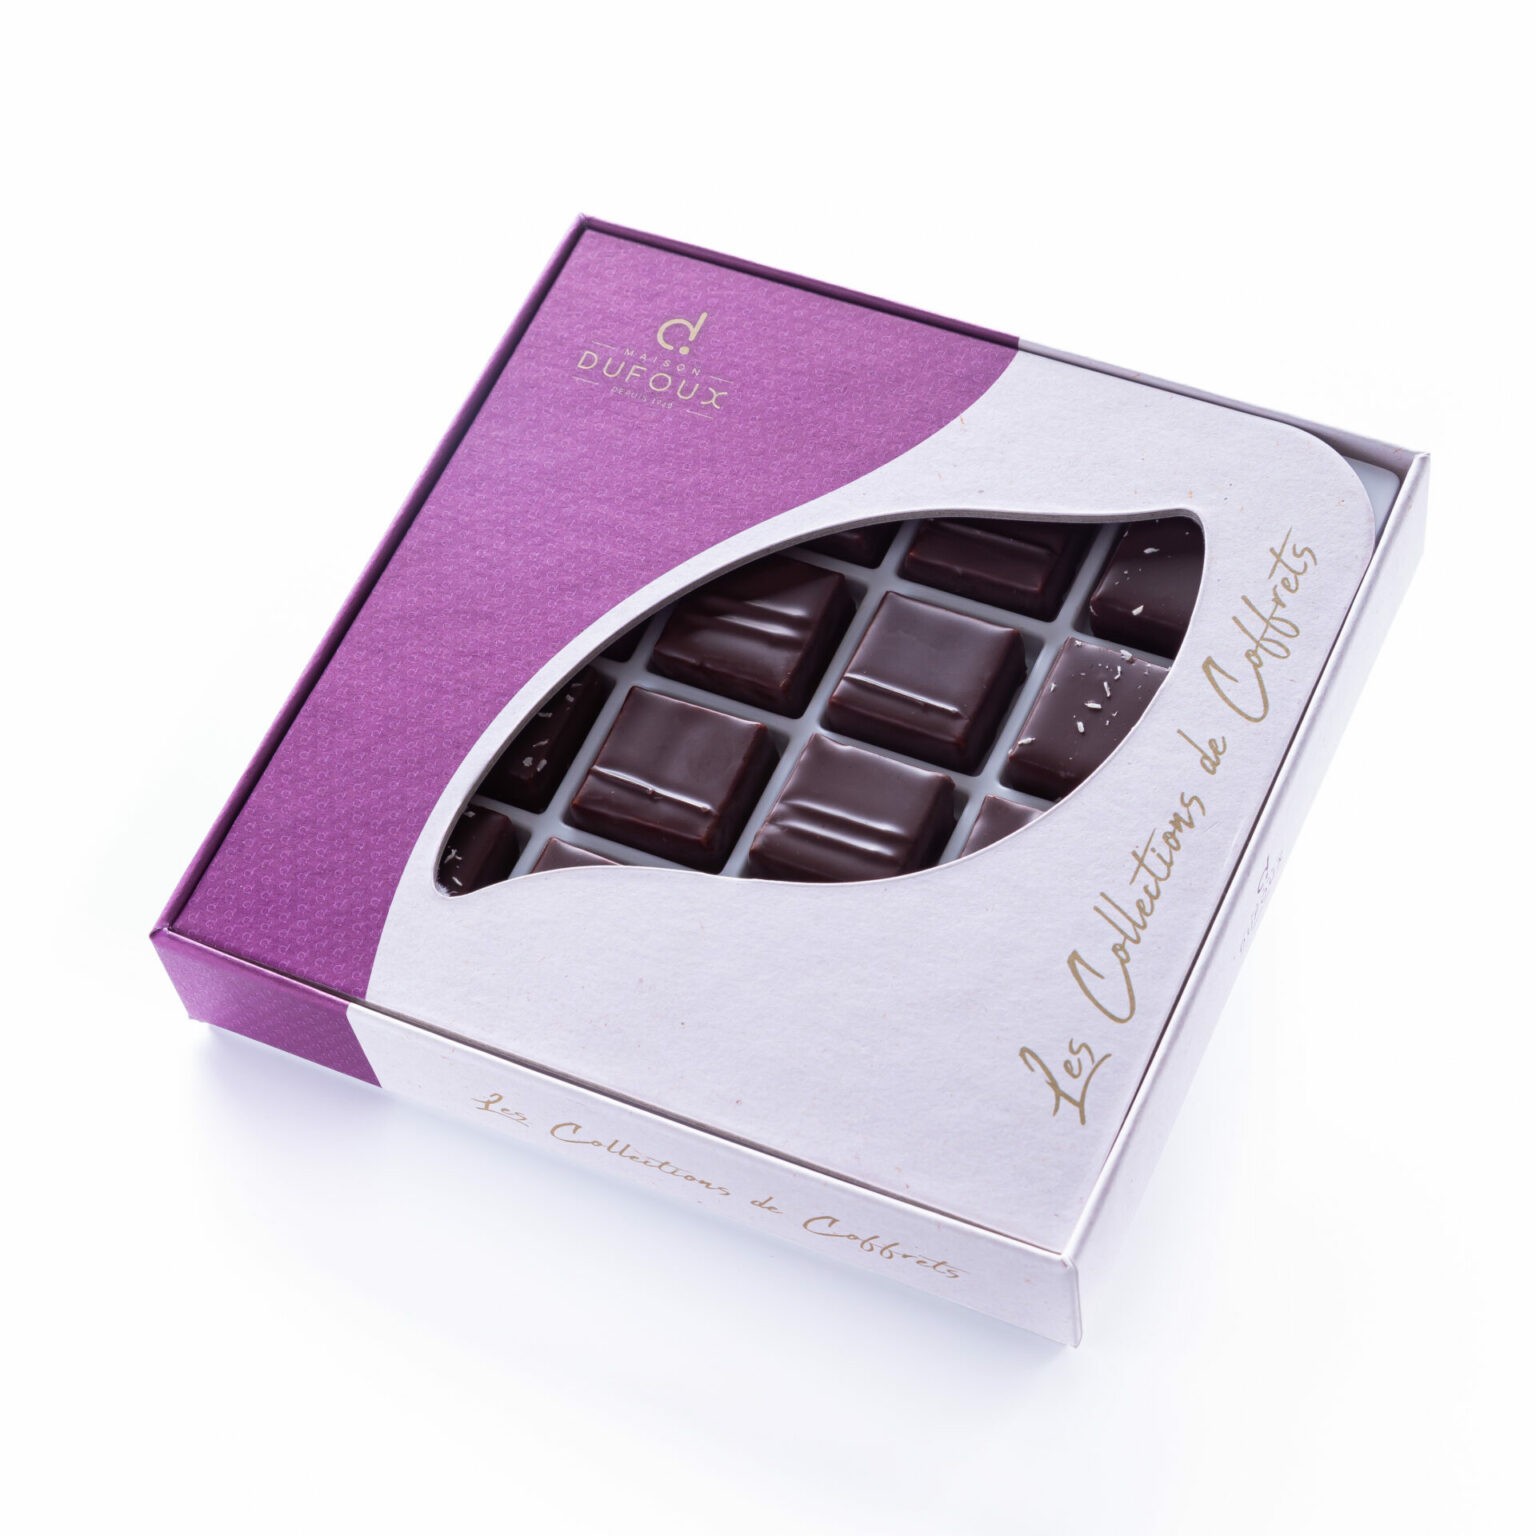 Coffret Chocolat Niveau Les Pralin S Maison Dufoux Artisan Chocolatier En Bourgogne Et Lyon